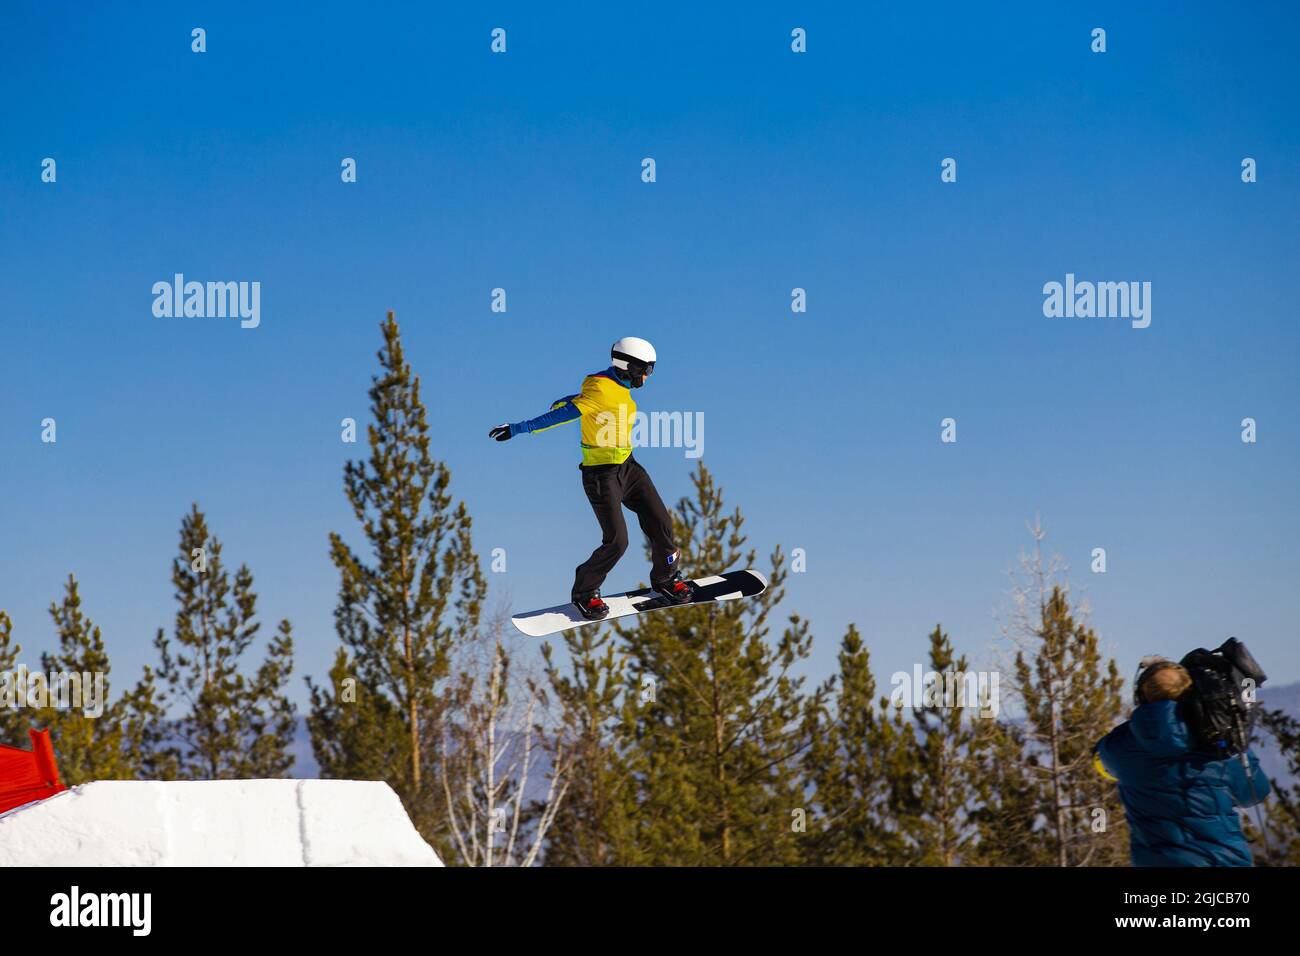 girl snowboarder ski jump, opérateur conduit la diffusion en direct Banque D'Images